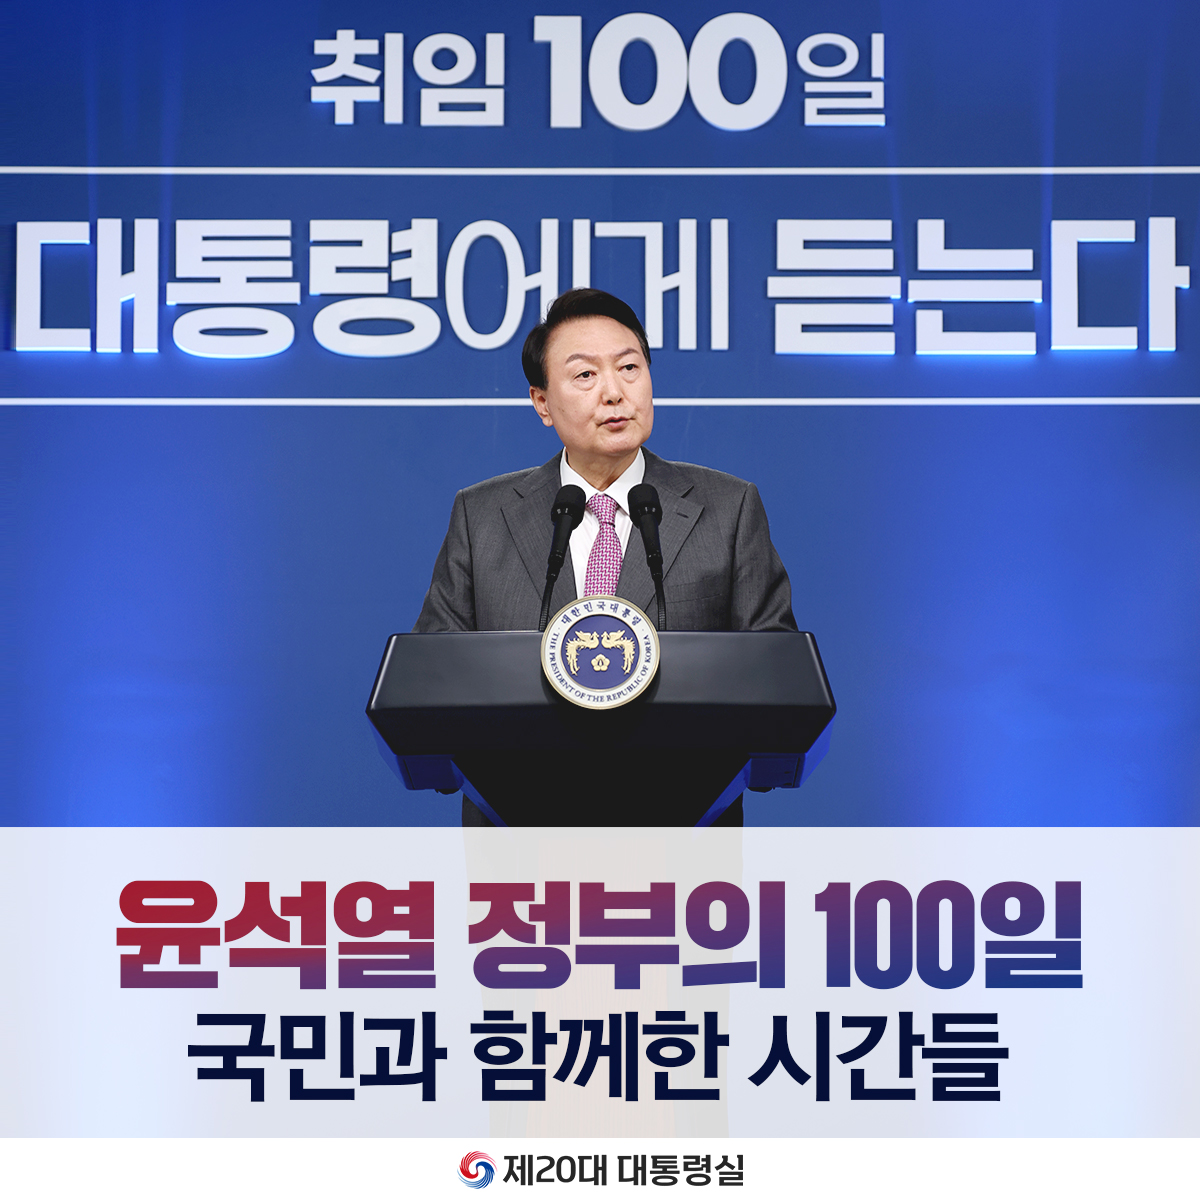 윤석열 정부의 100일, 국민과 함께한 시간들